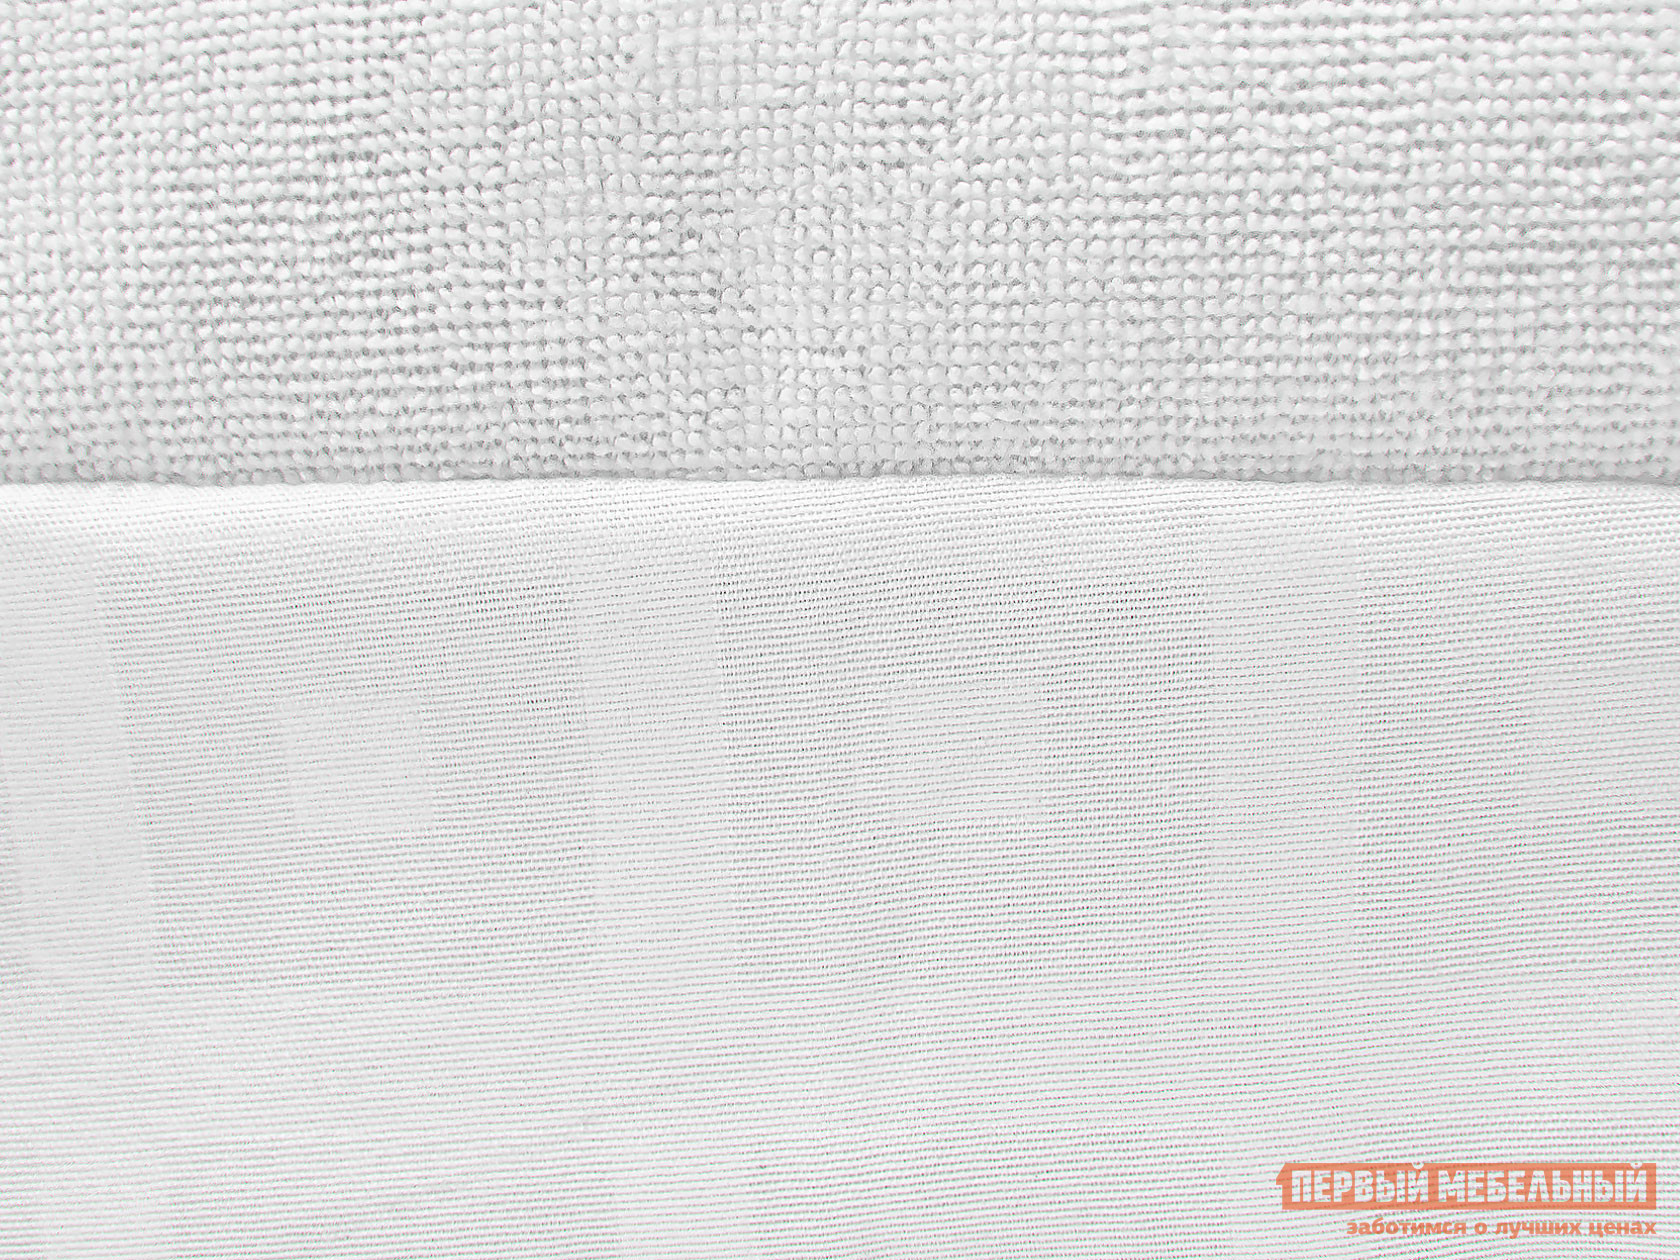 Чехол для матраса  Фулл протекшн с бортом Белый махровый, 1400 Х 2000 мм от Первый Мебельный